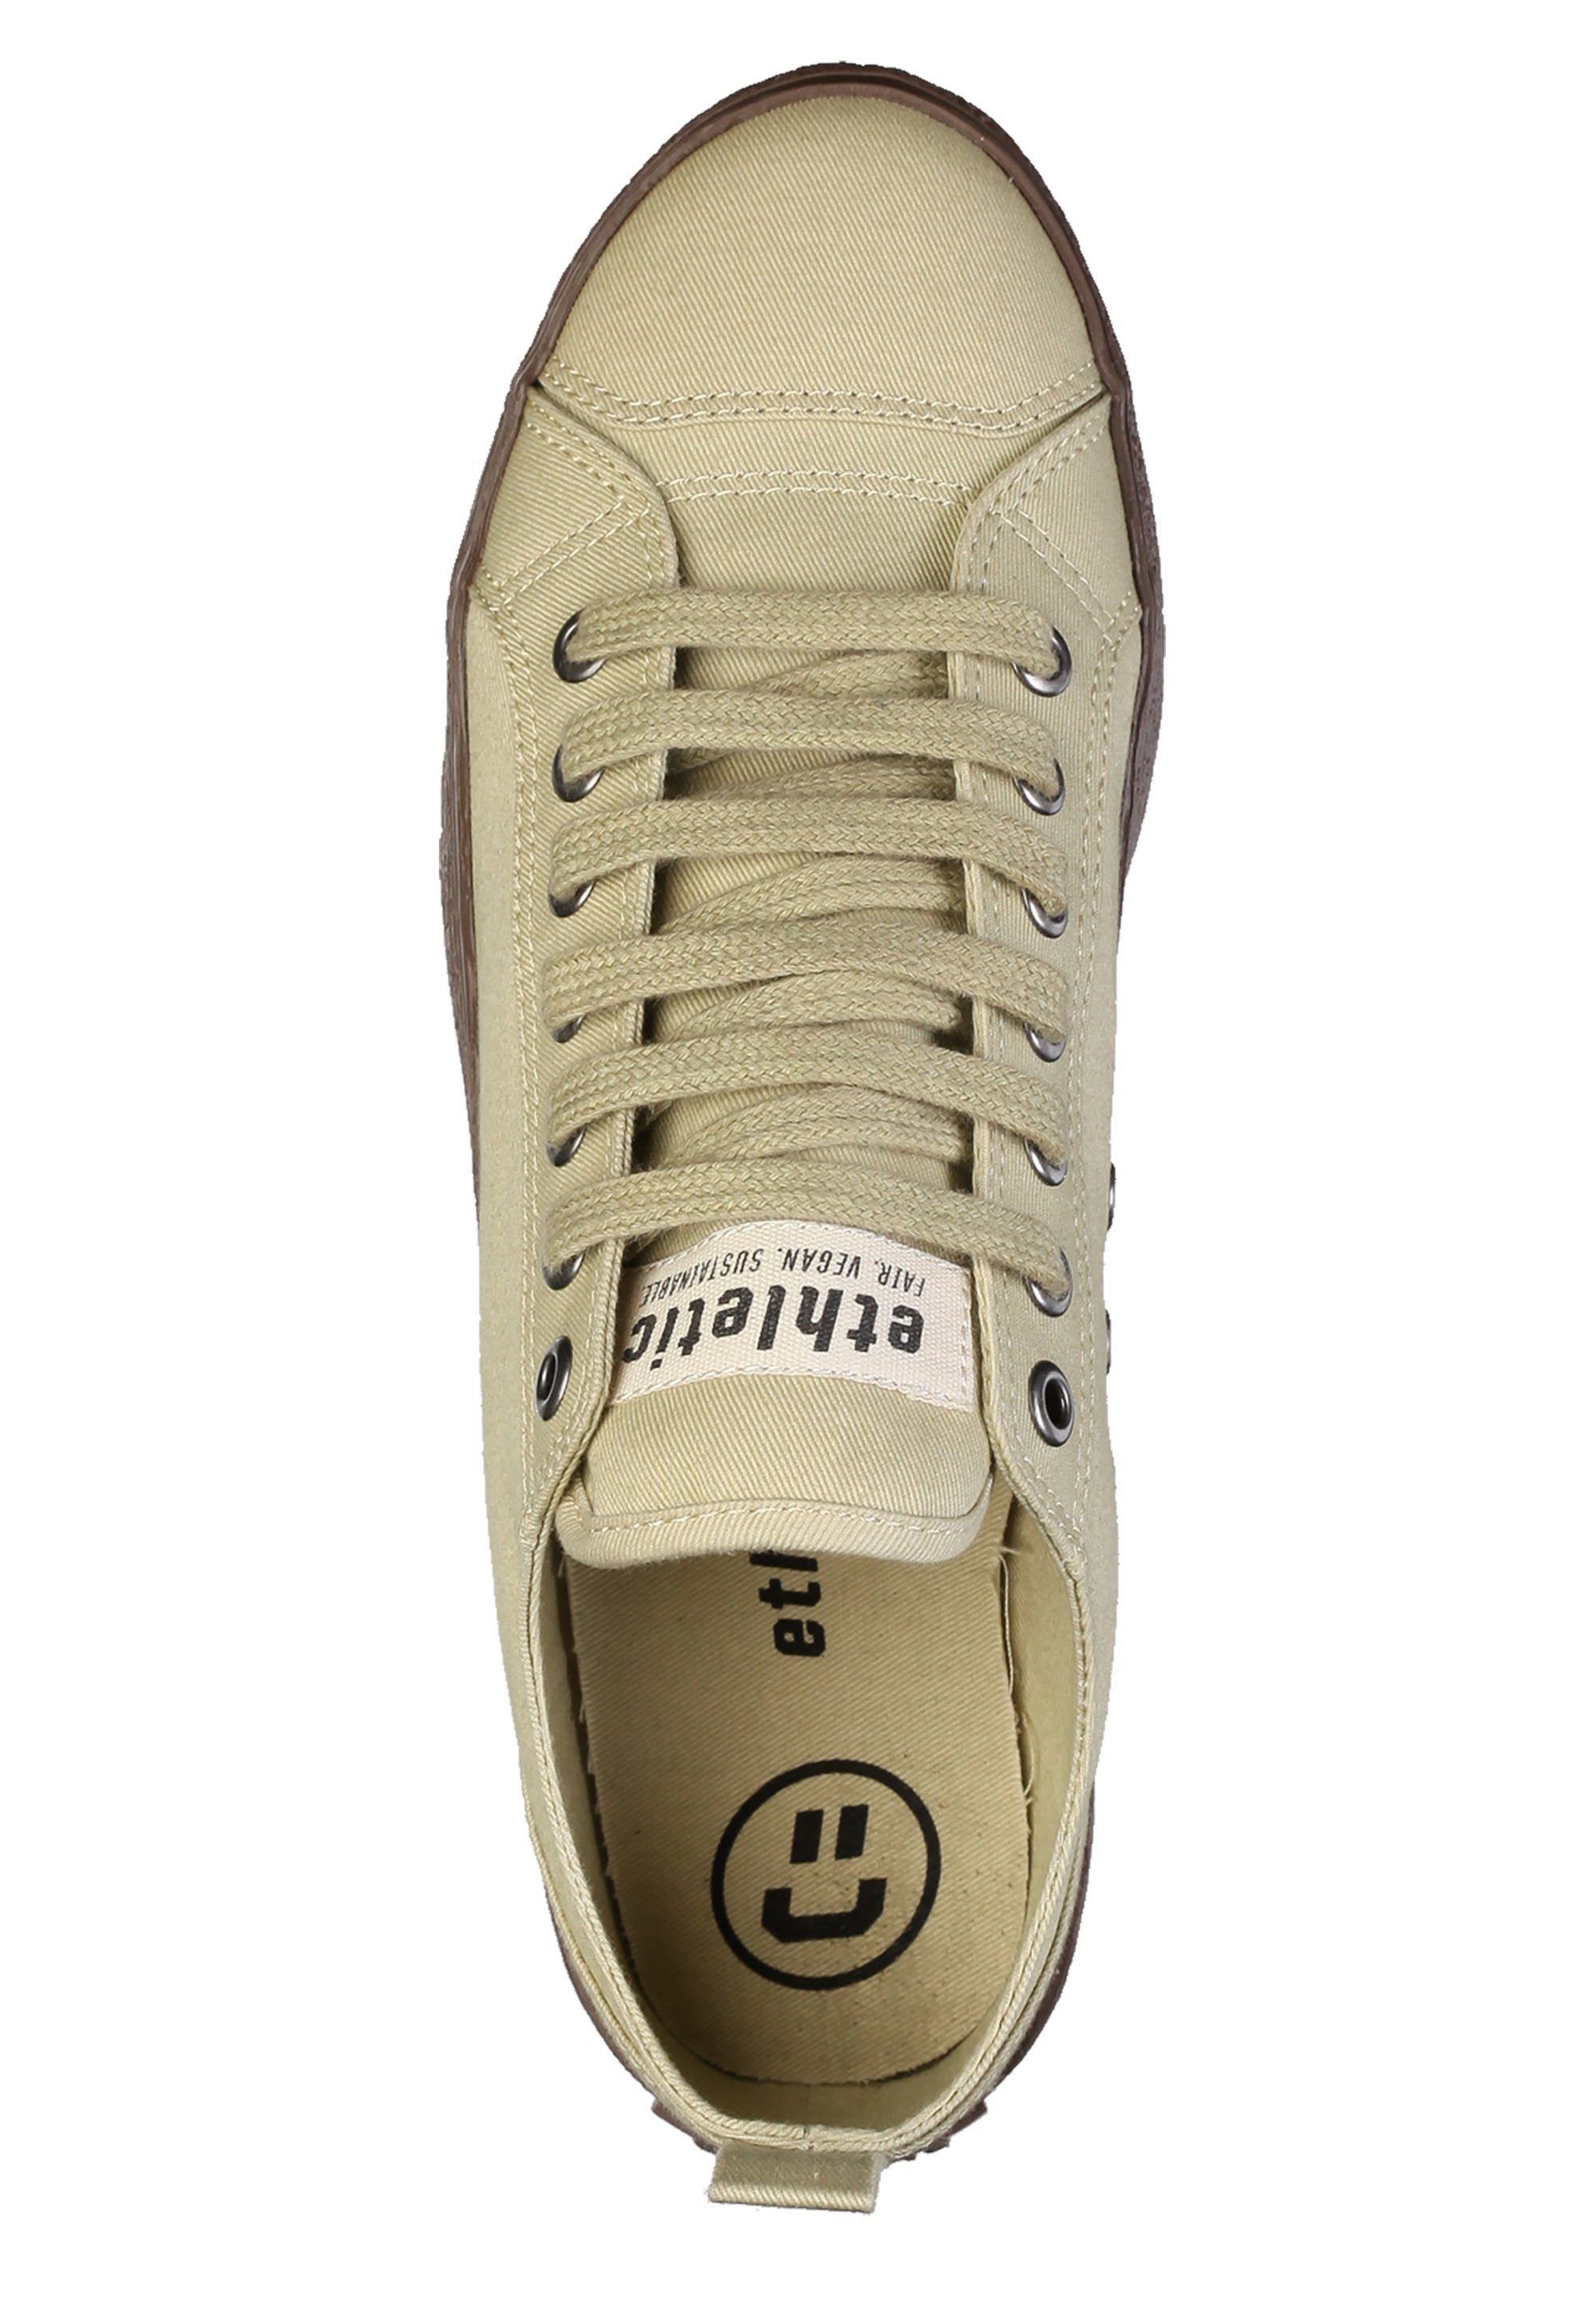 ETHLETIC velvet sage Produkt Sneaker Fairtrade Goto Lo